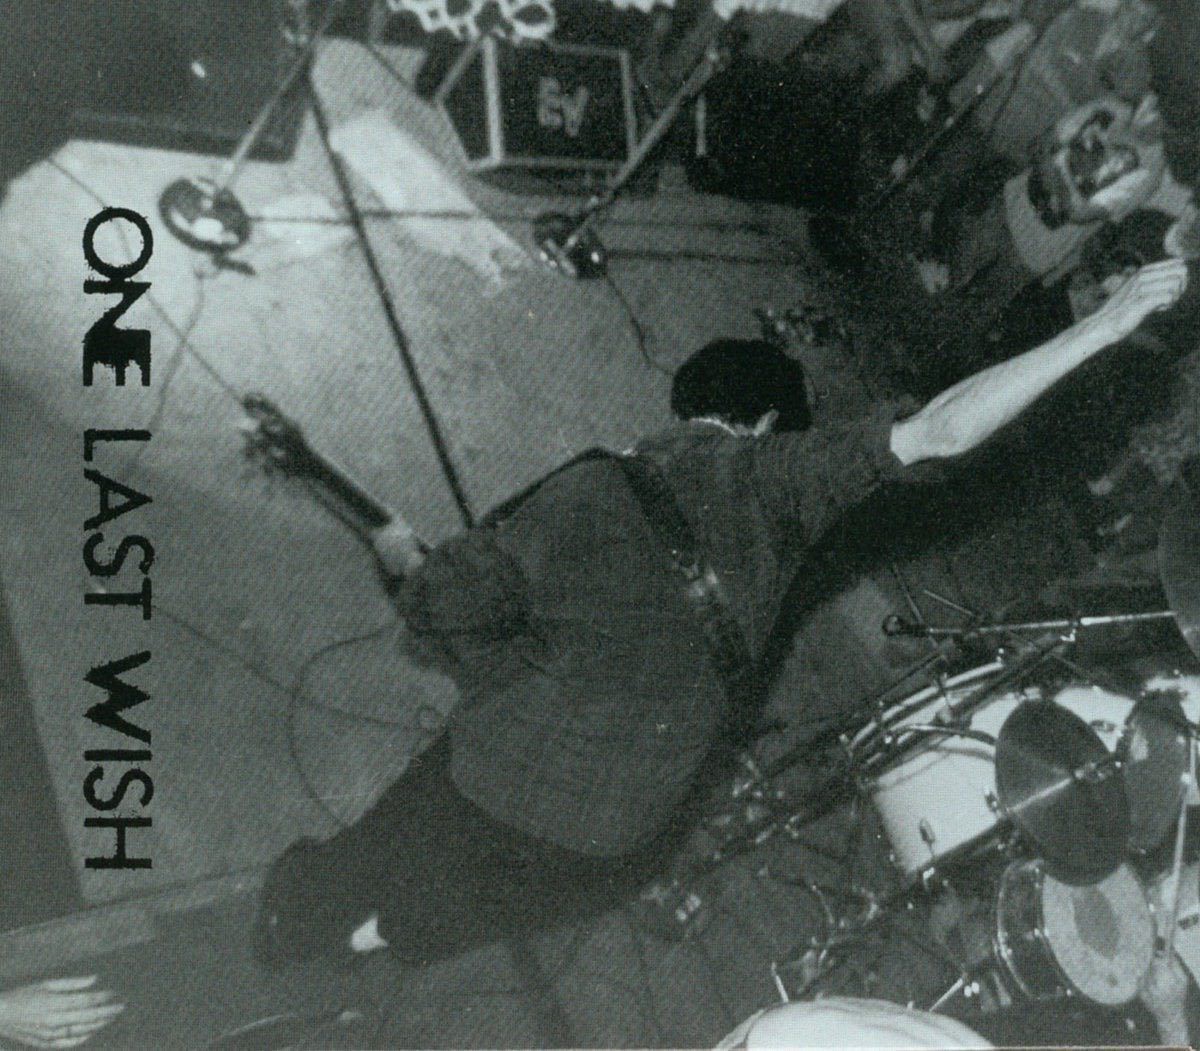 One Last Wish album cover image